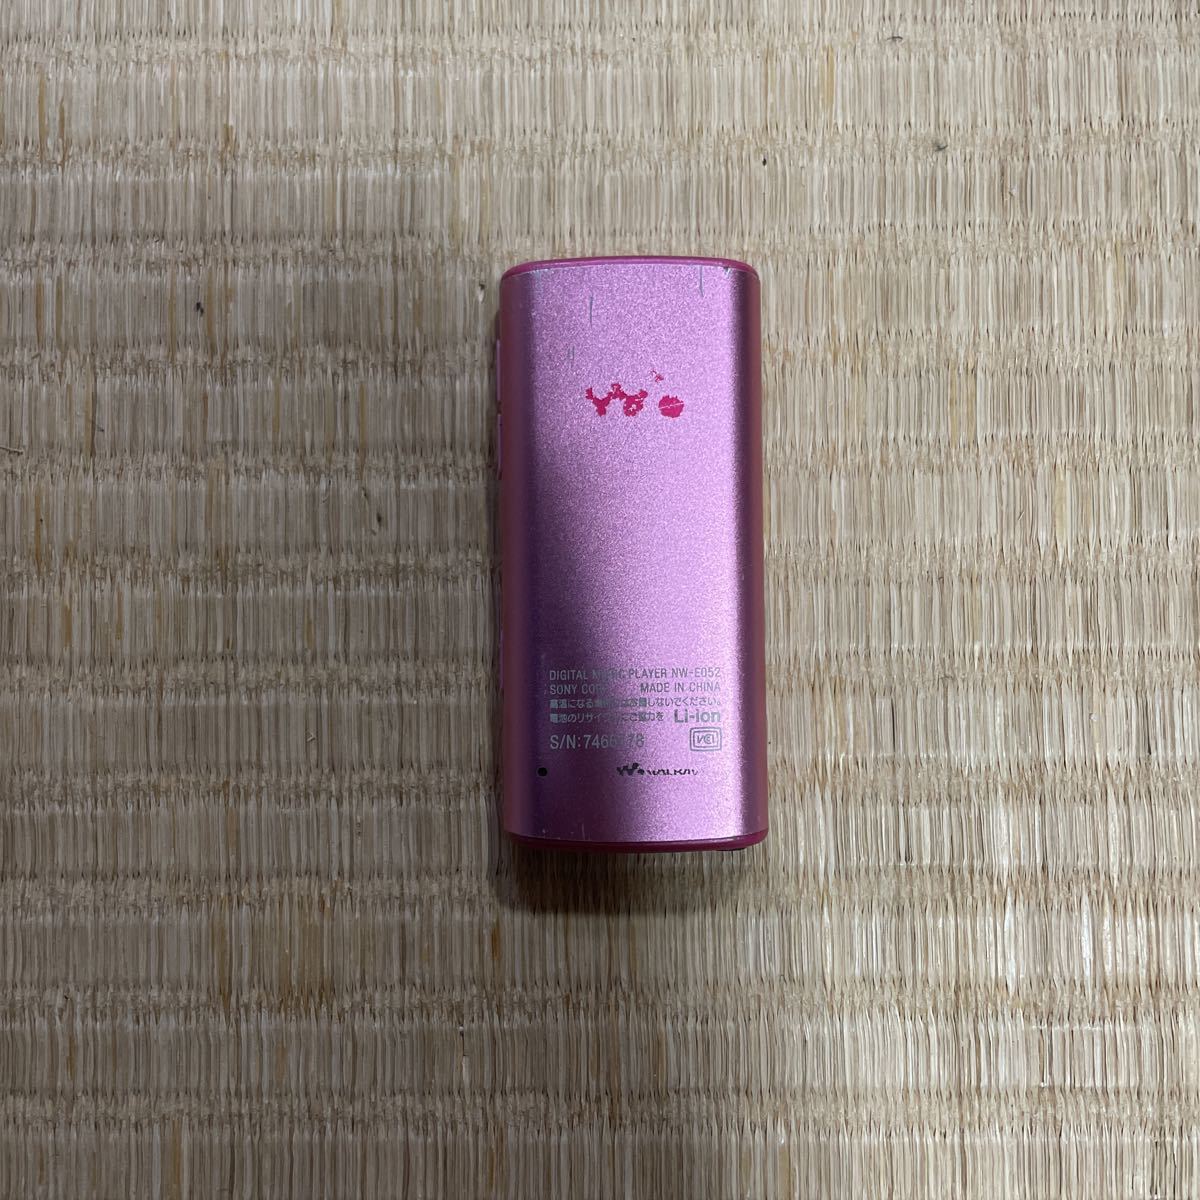 【WALKMAN】◆ウォークマン◆ SONY ソニー NW-E052 ピンクカラー 2GB_画像2